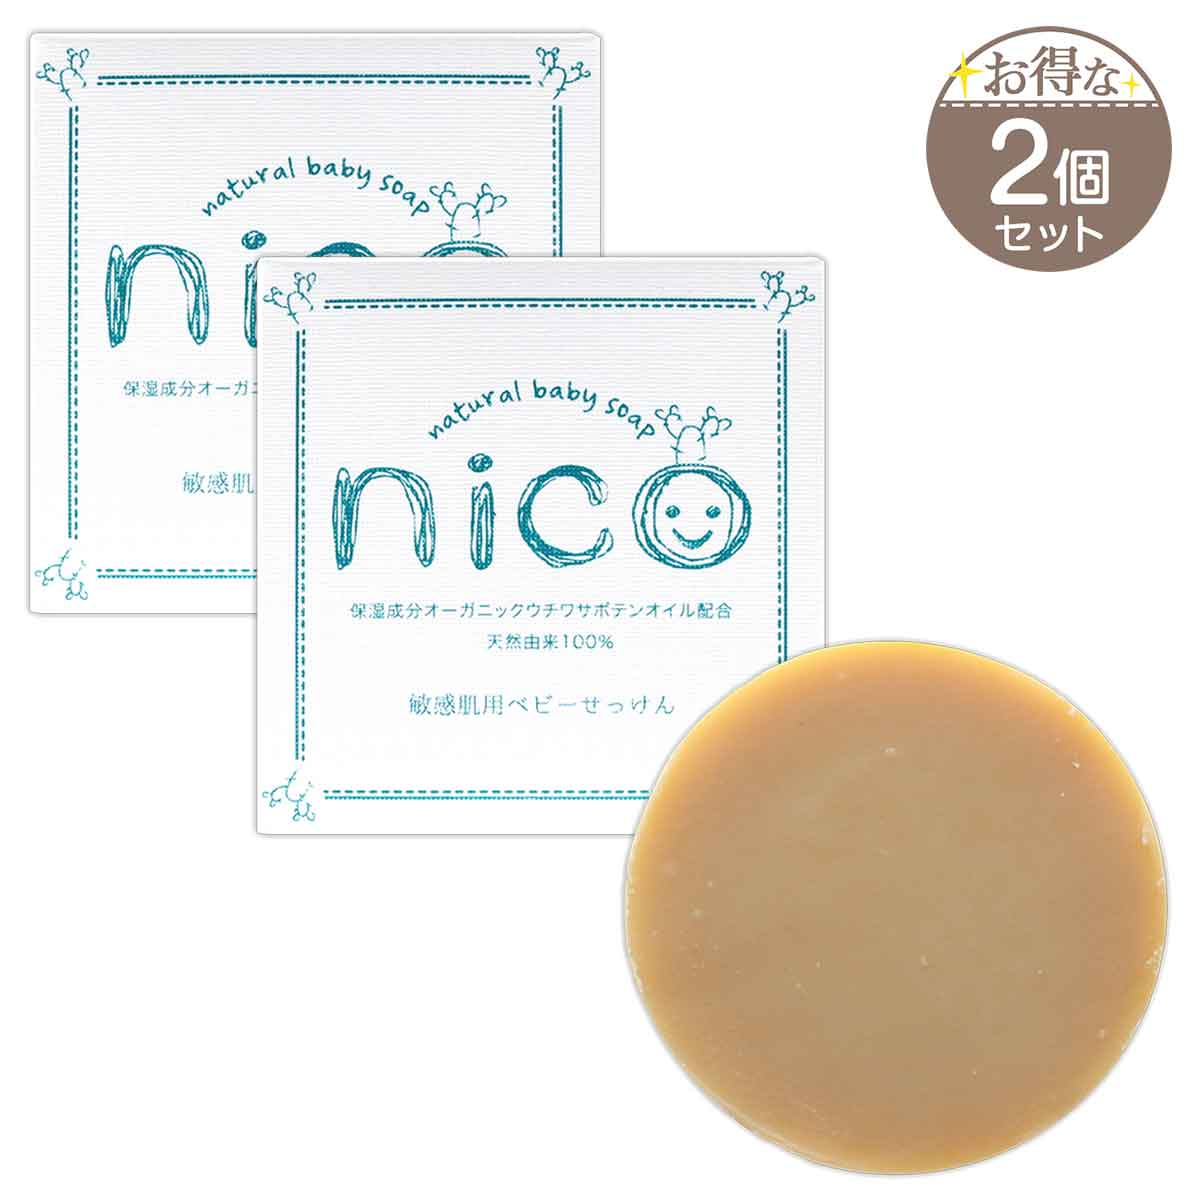 【楽天市場】nico石鹸 ニコ石鹸 にこせっけん 敏感肌 用 50g 